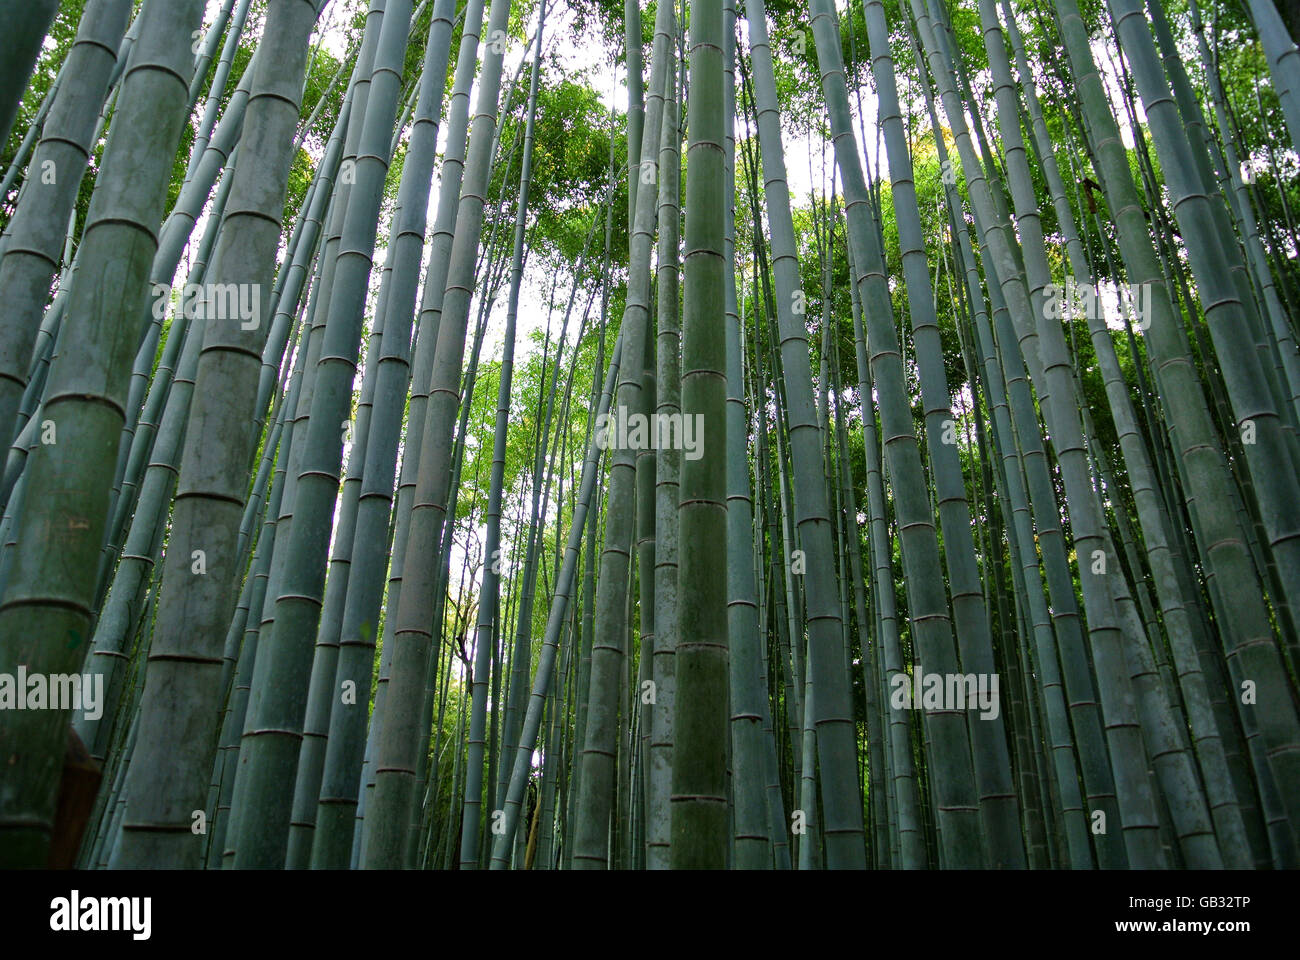 Bamboo forest in Arashiyama Kyoto Japan Stock Photo